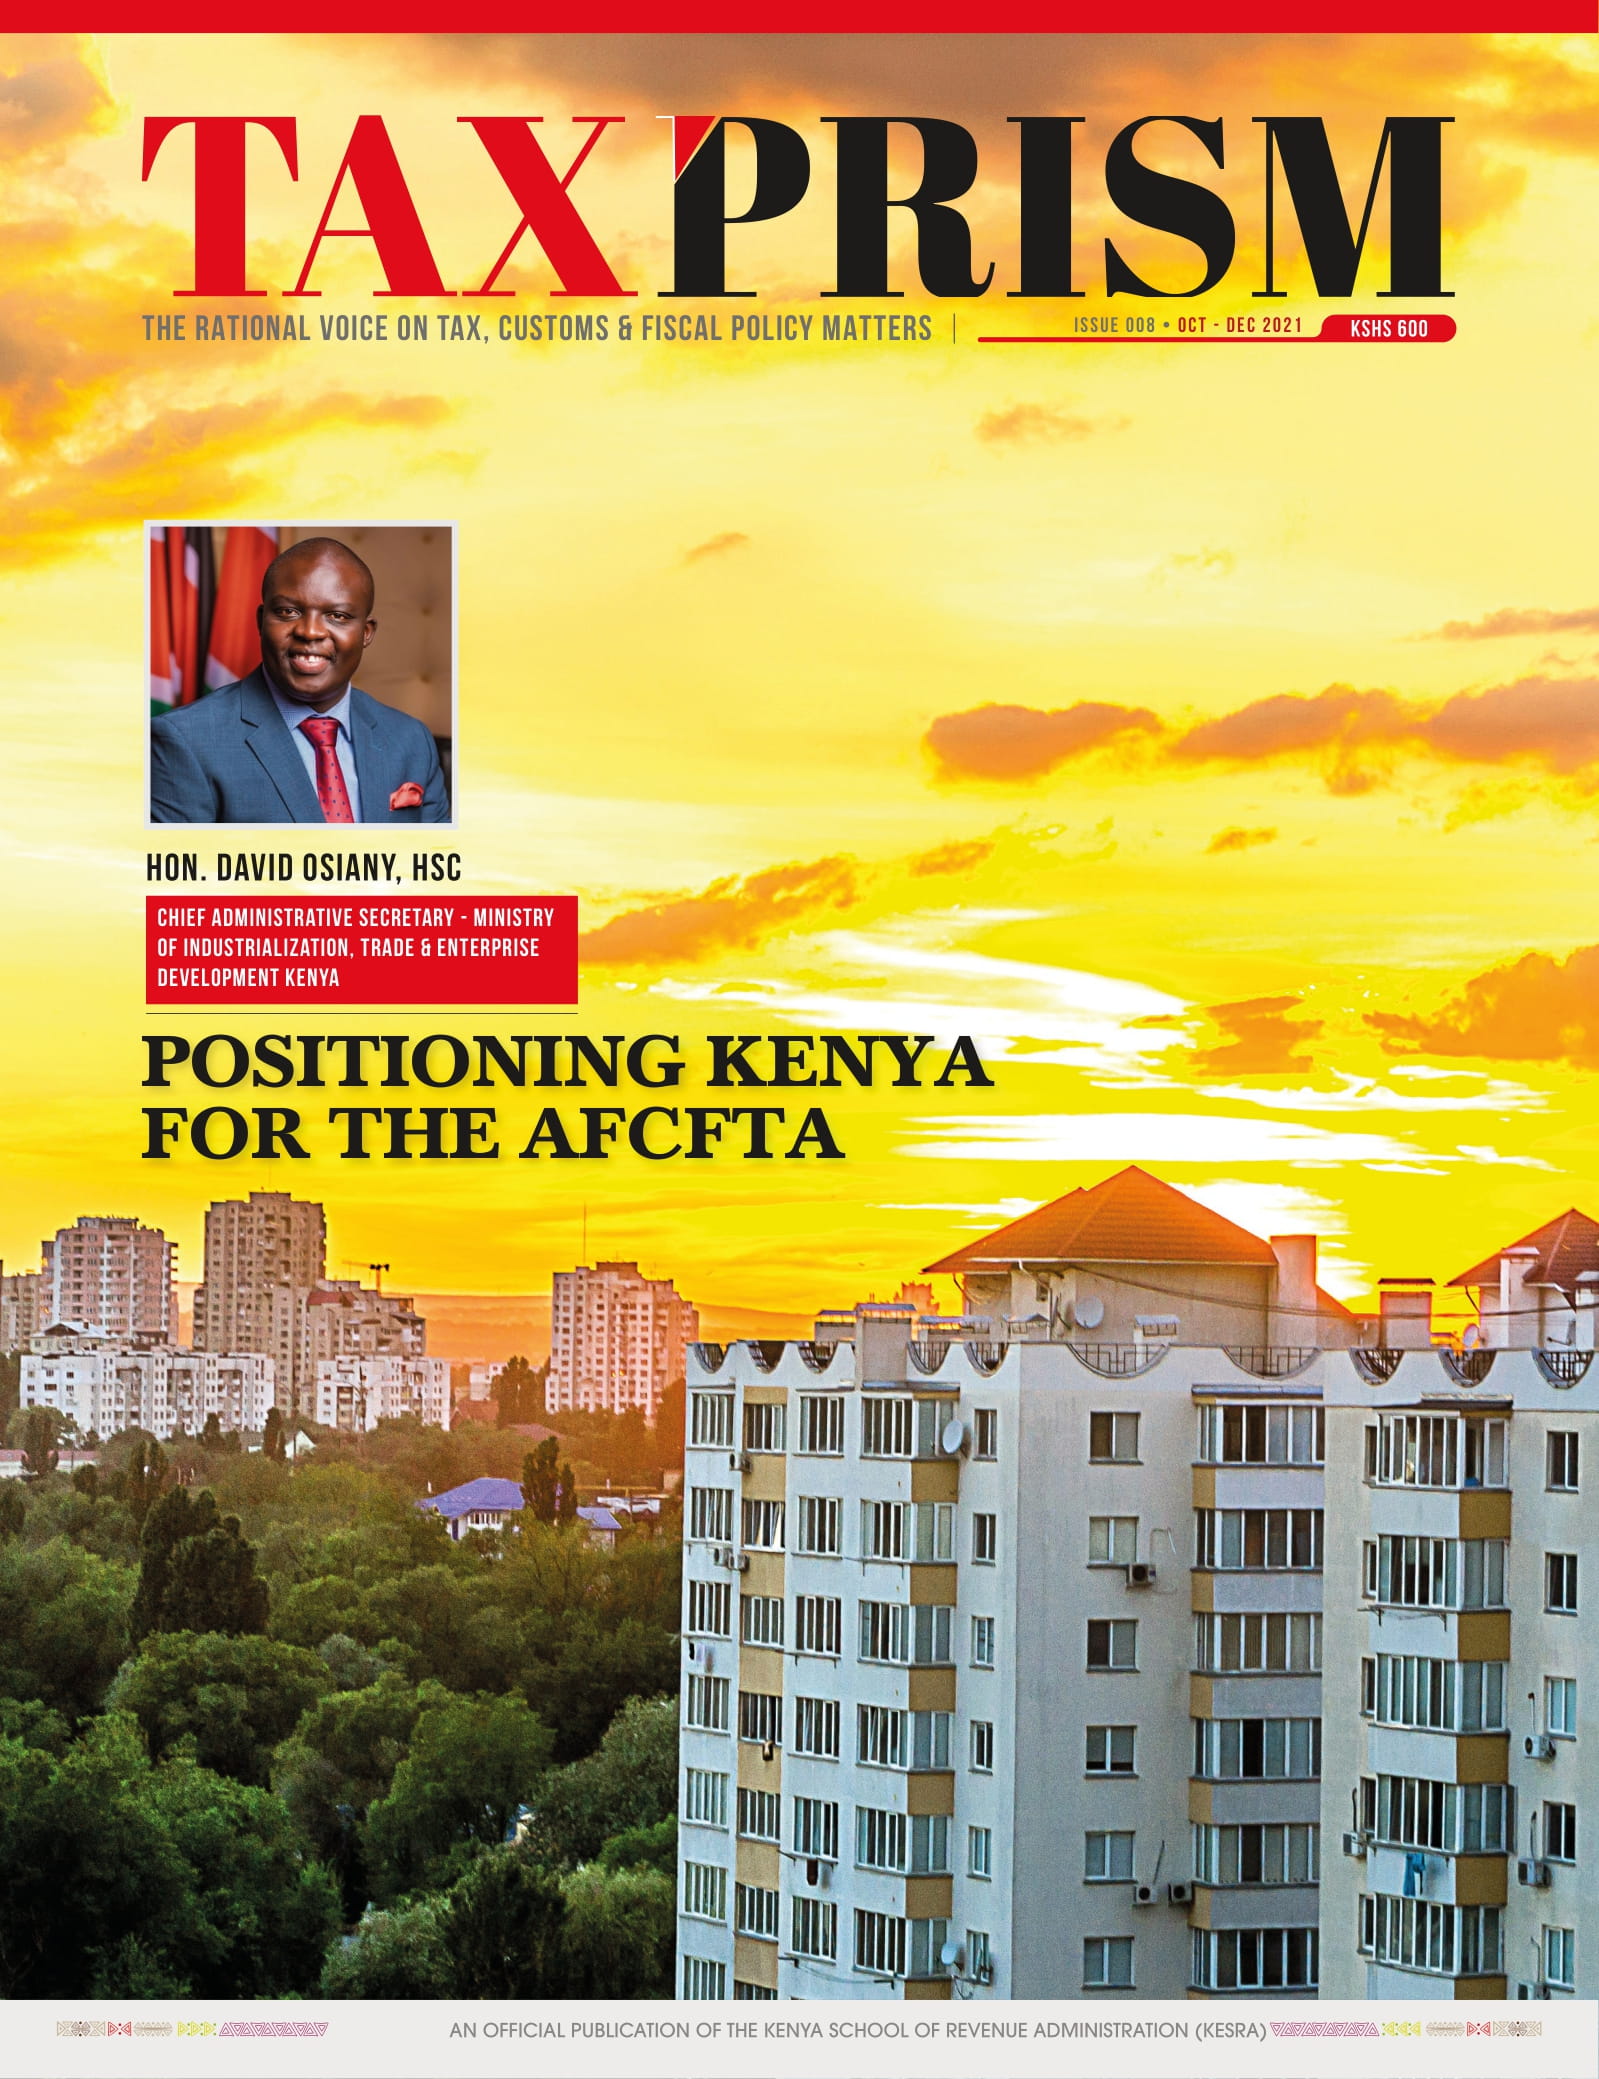 Positioning Kenya for the AFCFTA